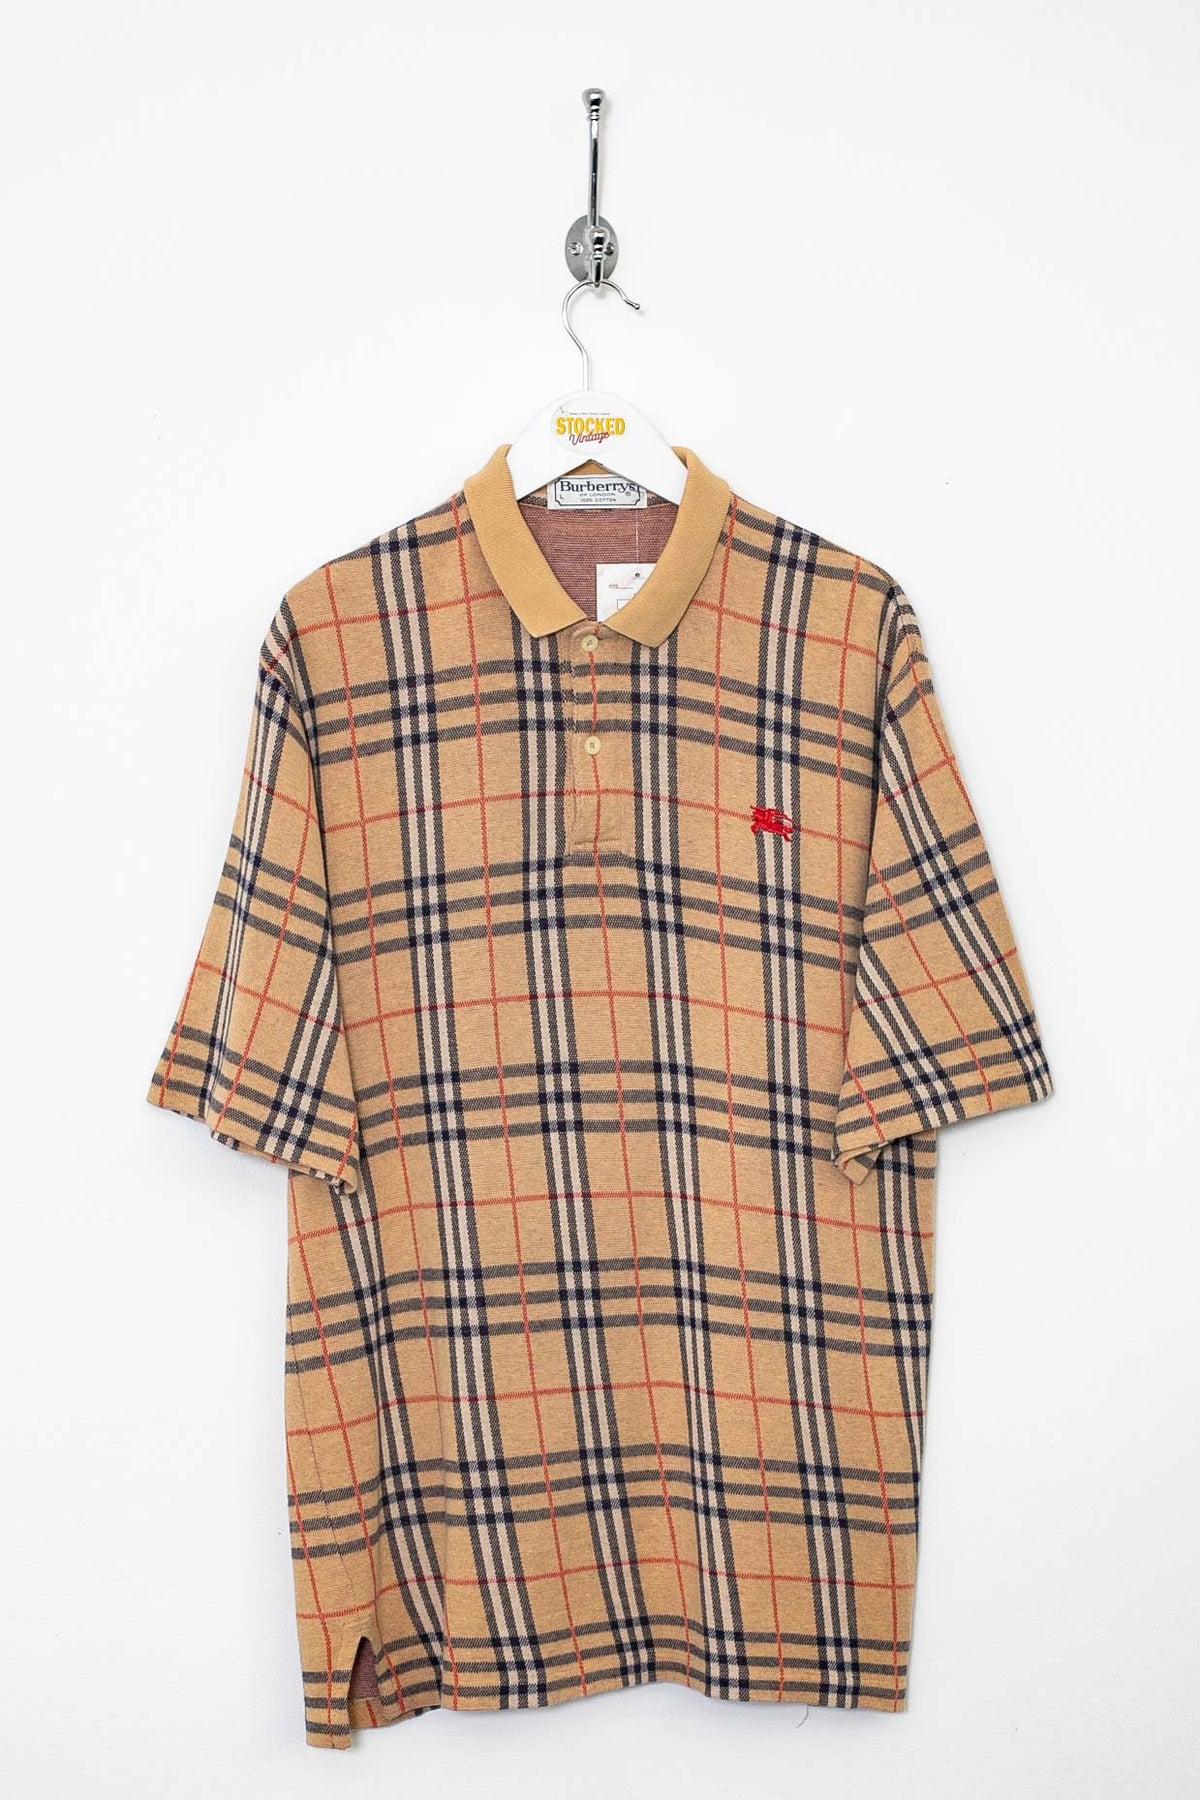 90s Burberry Nova Check Polo shirt (M)